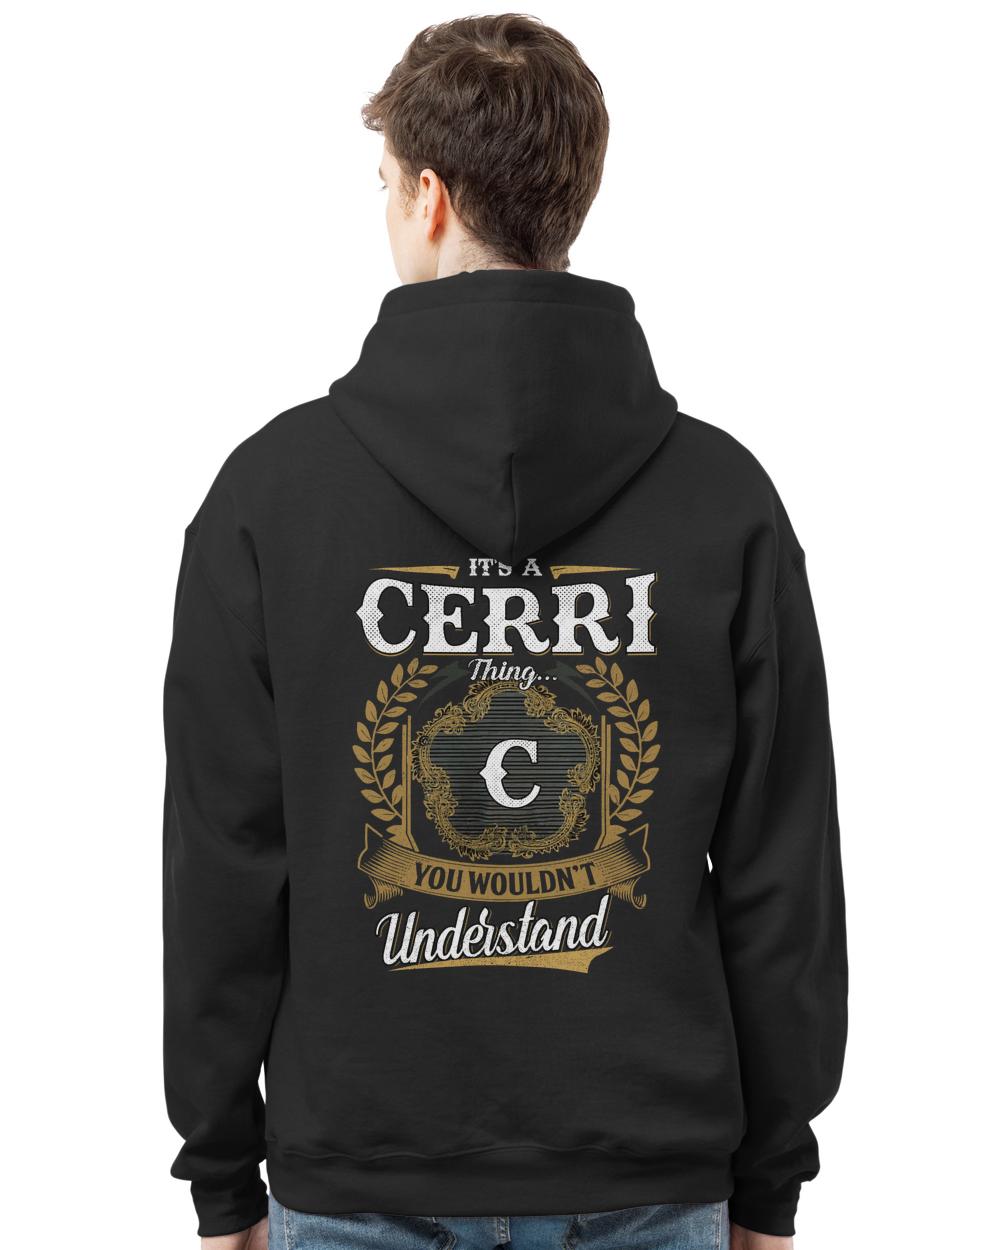 CERRI-13K-1-01